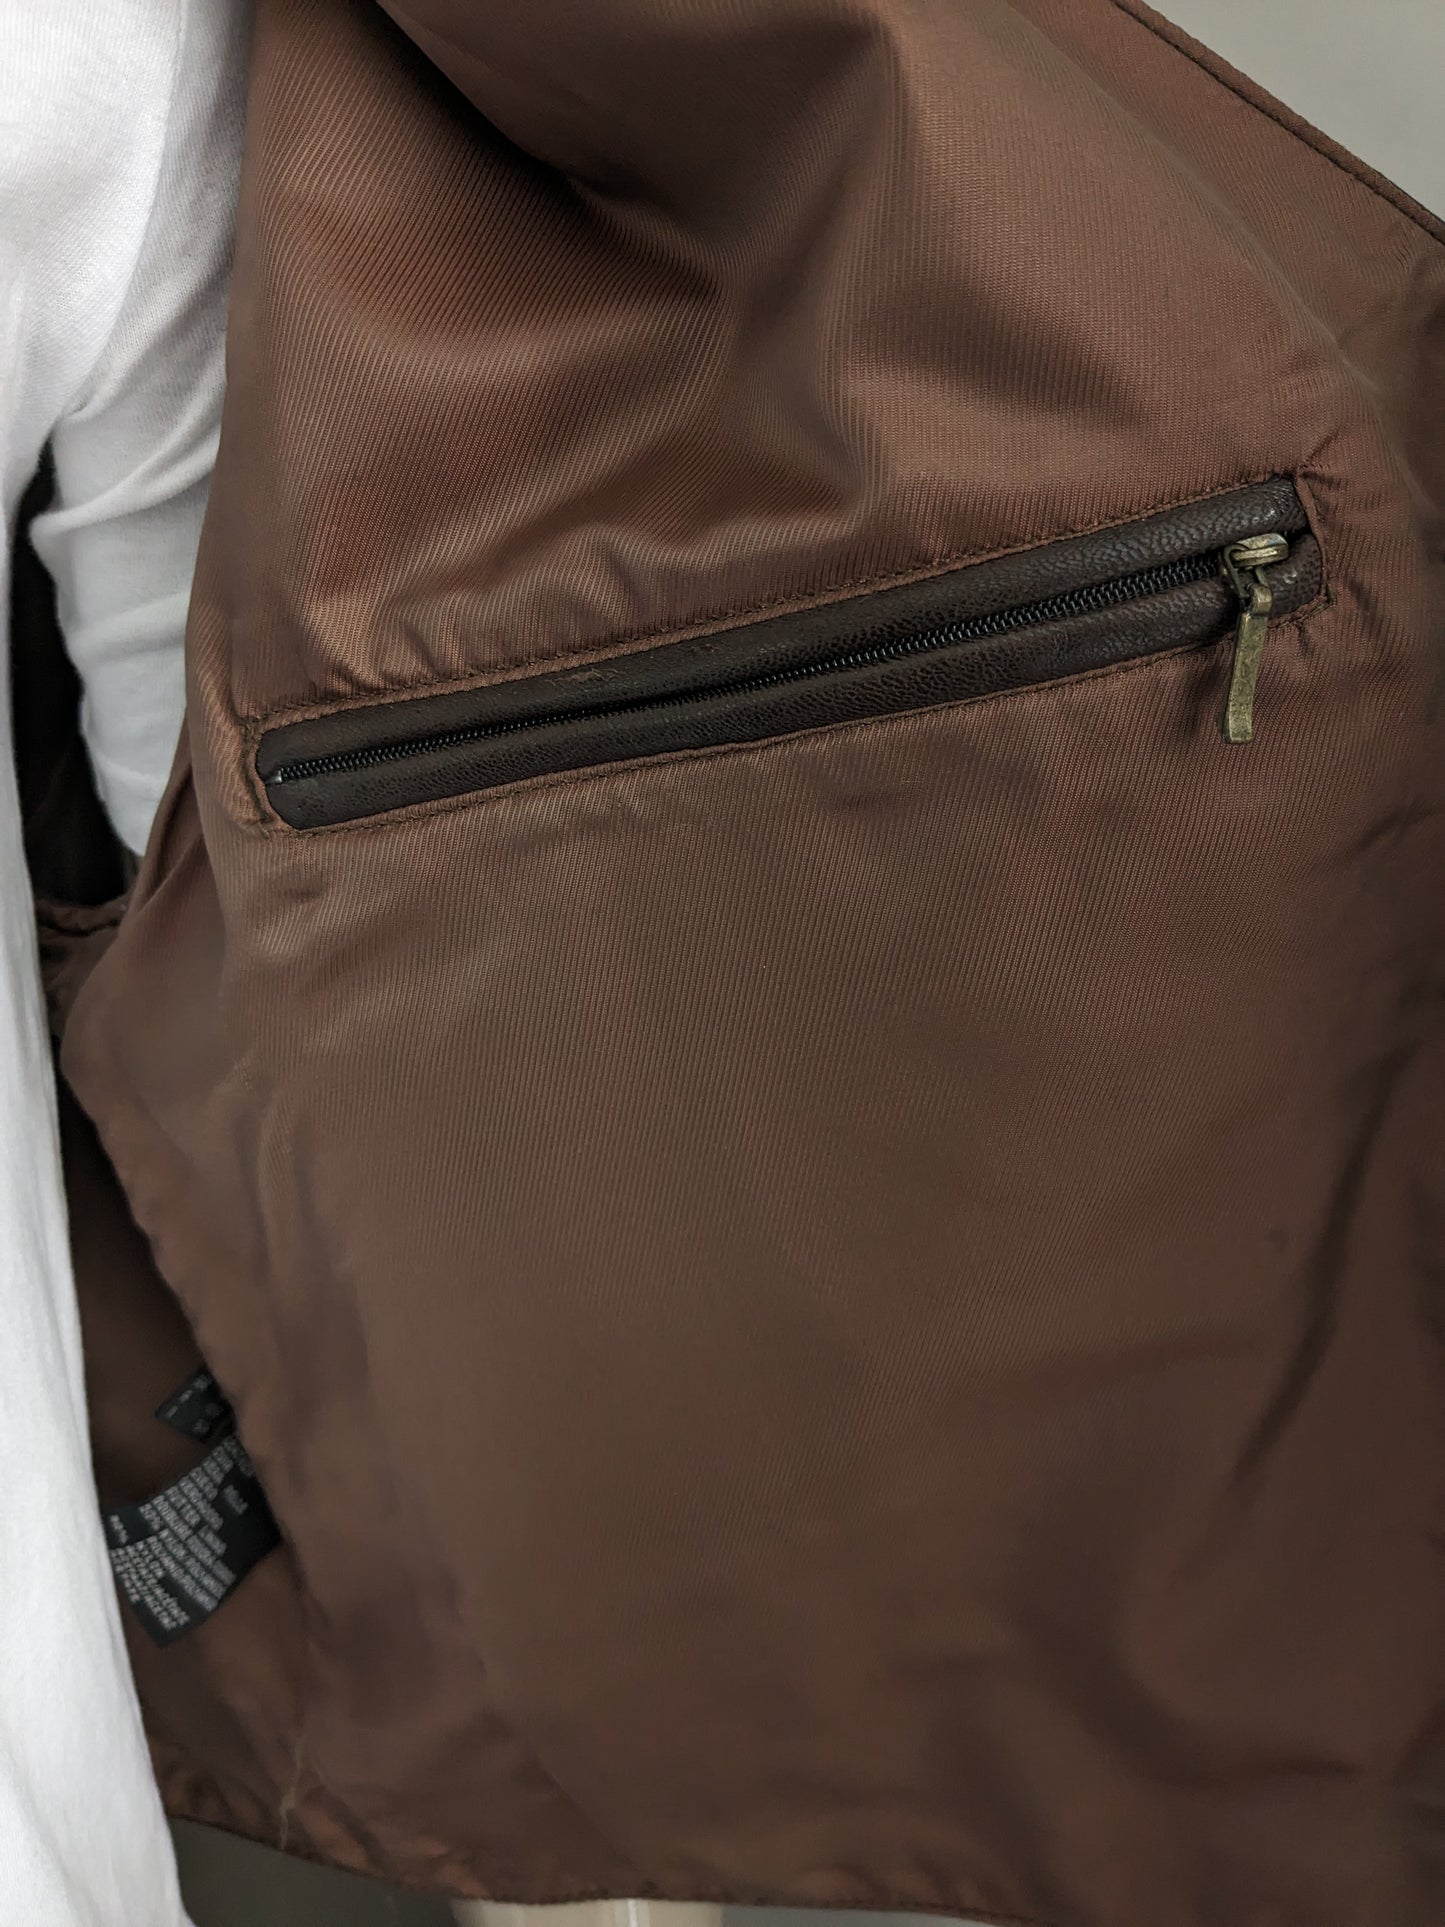 Trapper chaleco de cuero de doble lado. Marrón oscuro con 2 bolsillos internos. Tamaño 54/56 / xl